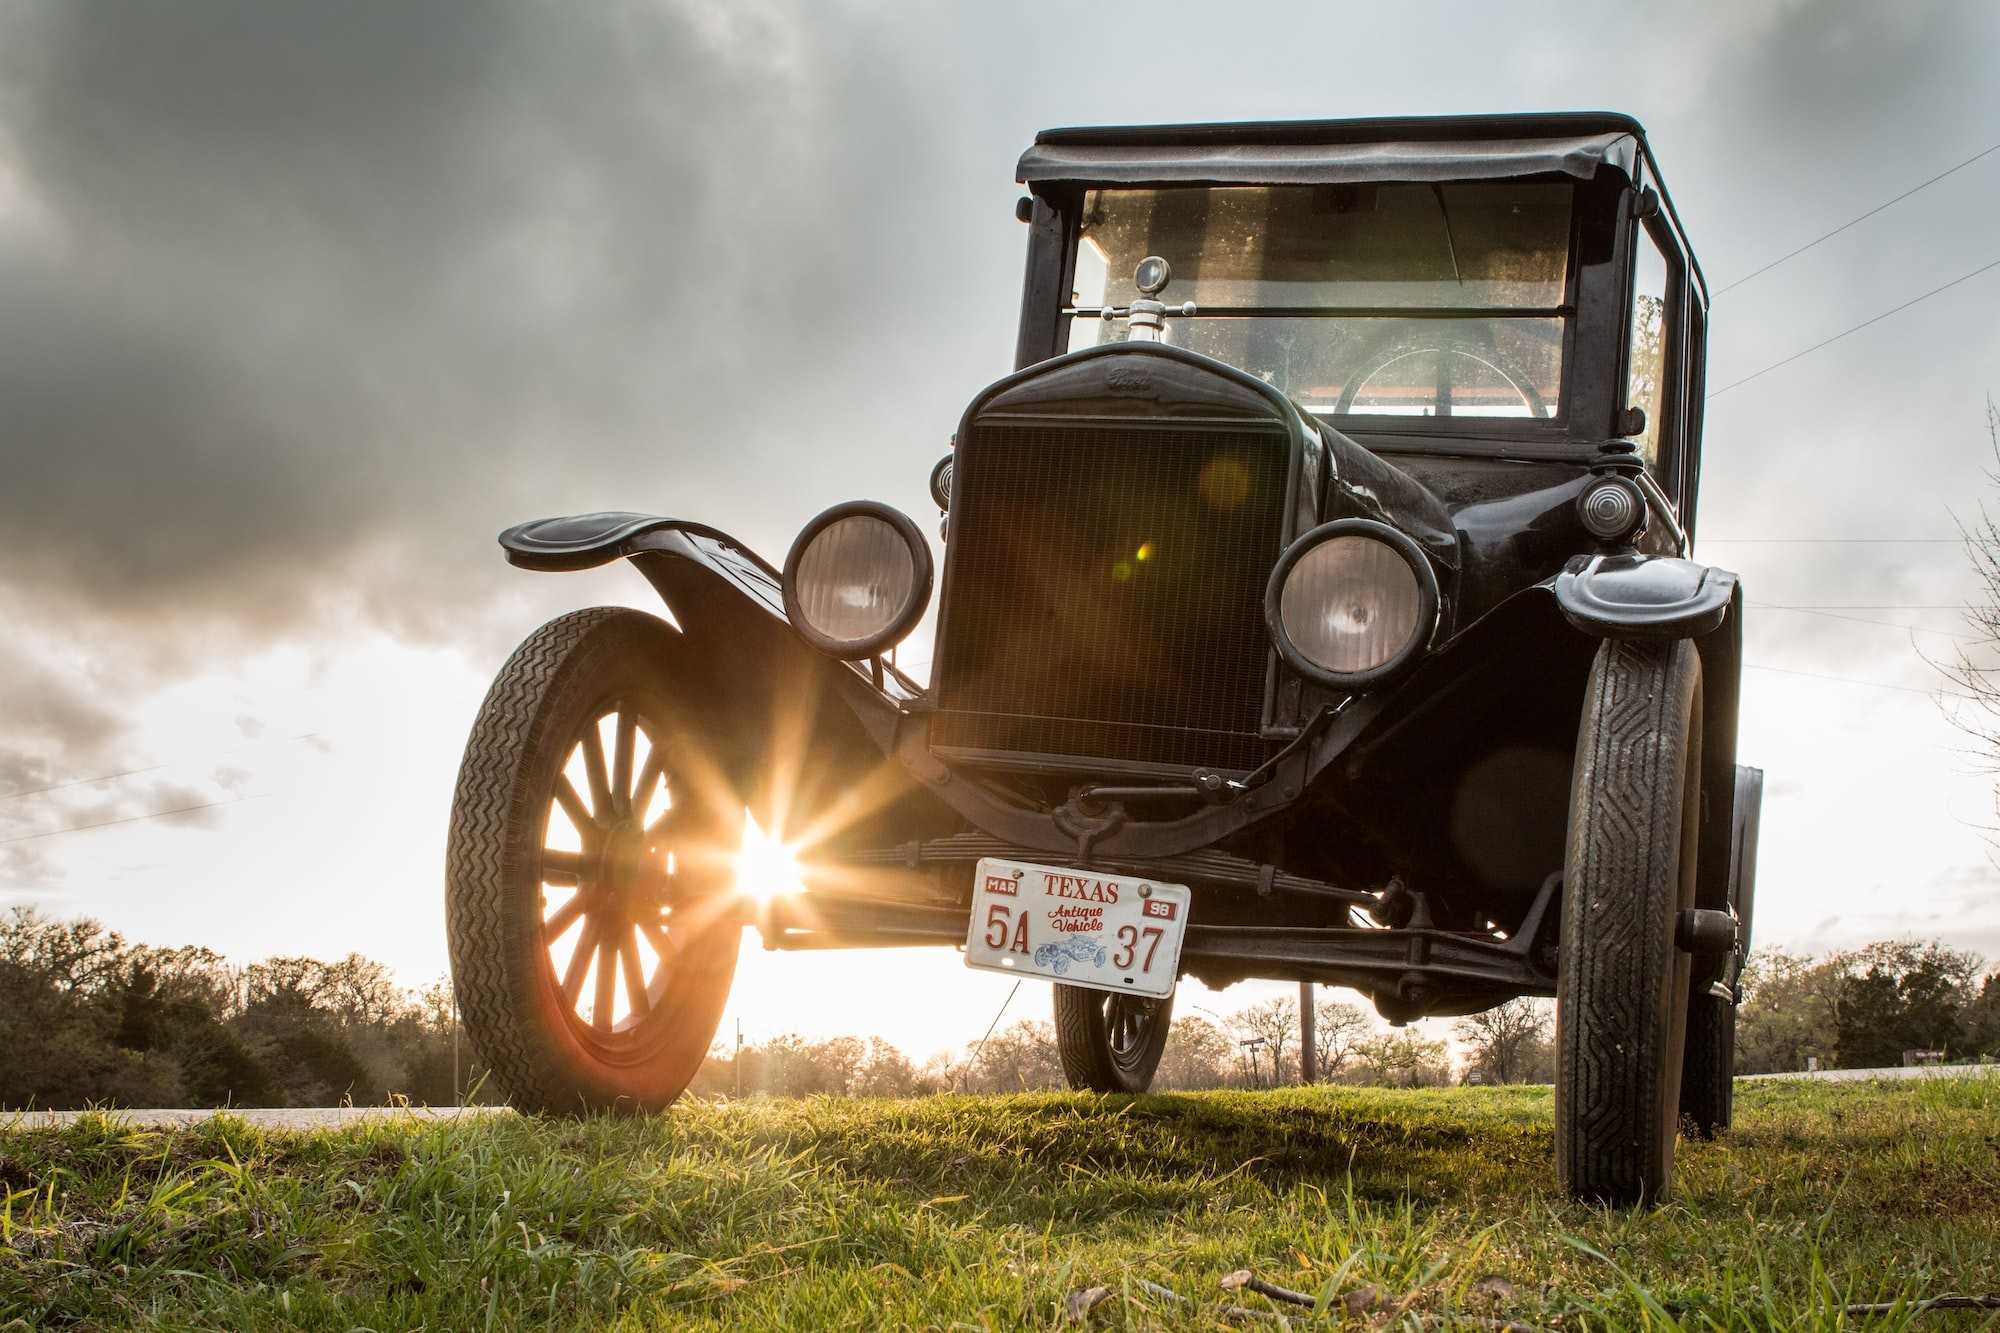 Henry Ford - Tìm hiểu triết lý kinh doanh của “Huyền thoại ô tô”